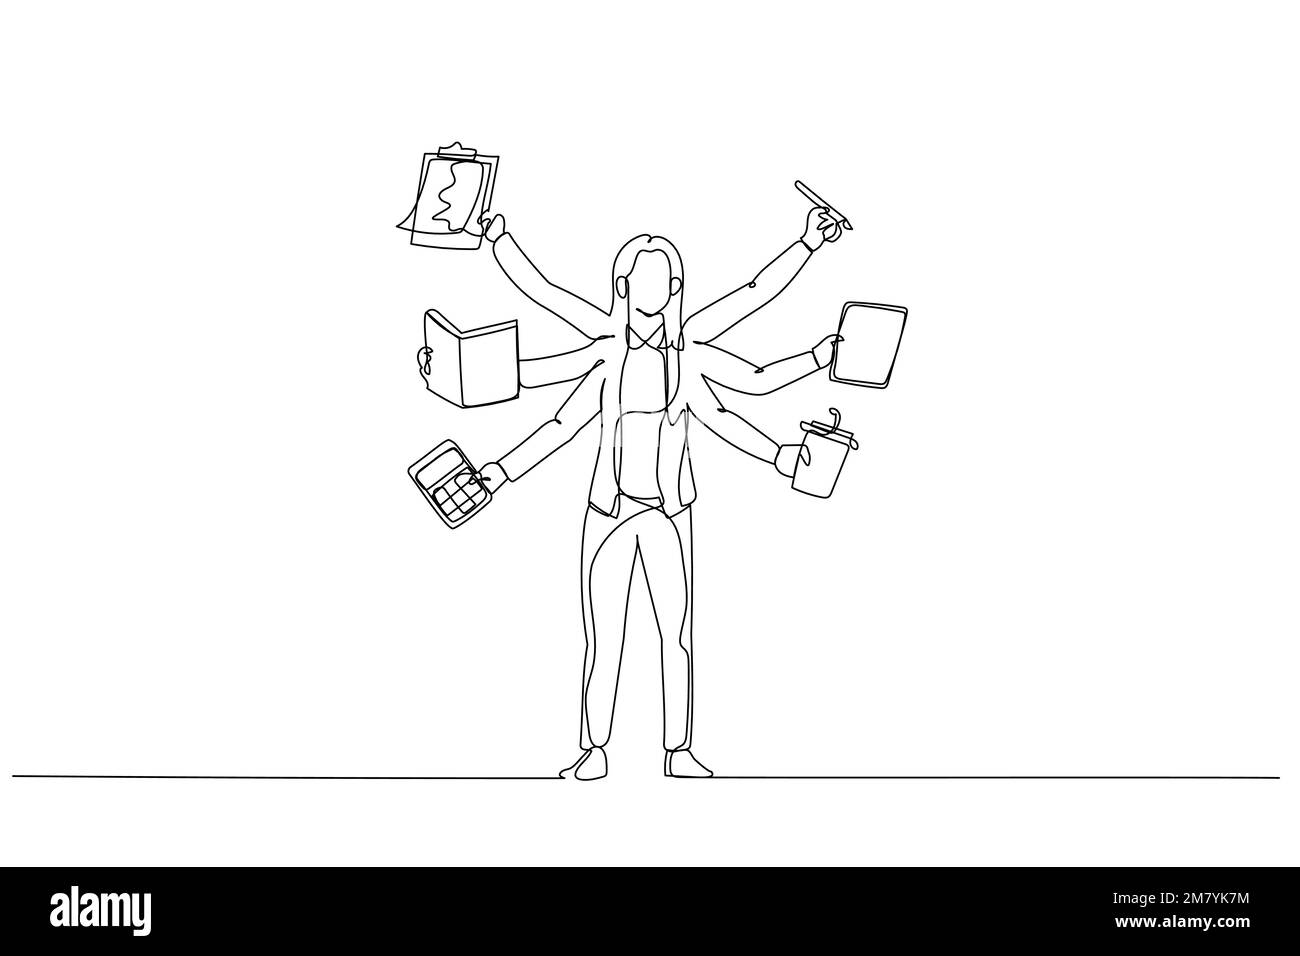 Cartoon einer Geschäftsfrau mit mehrhändigem Multitasking-Konzept. Einteiliges Design mit durchgehender Strichzeichnung Stock Vektor